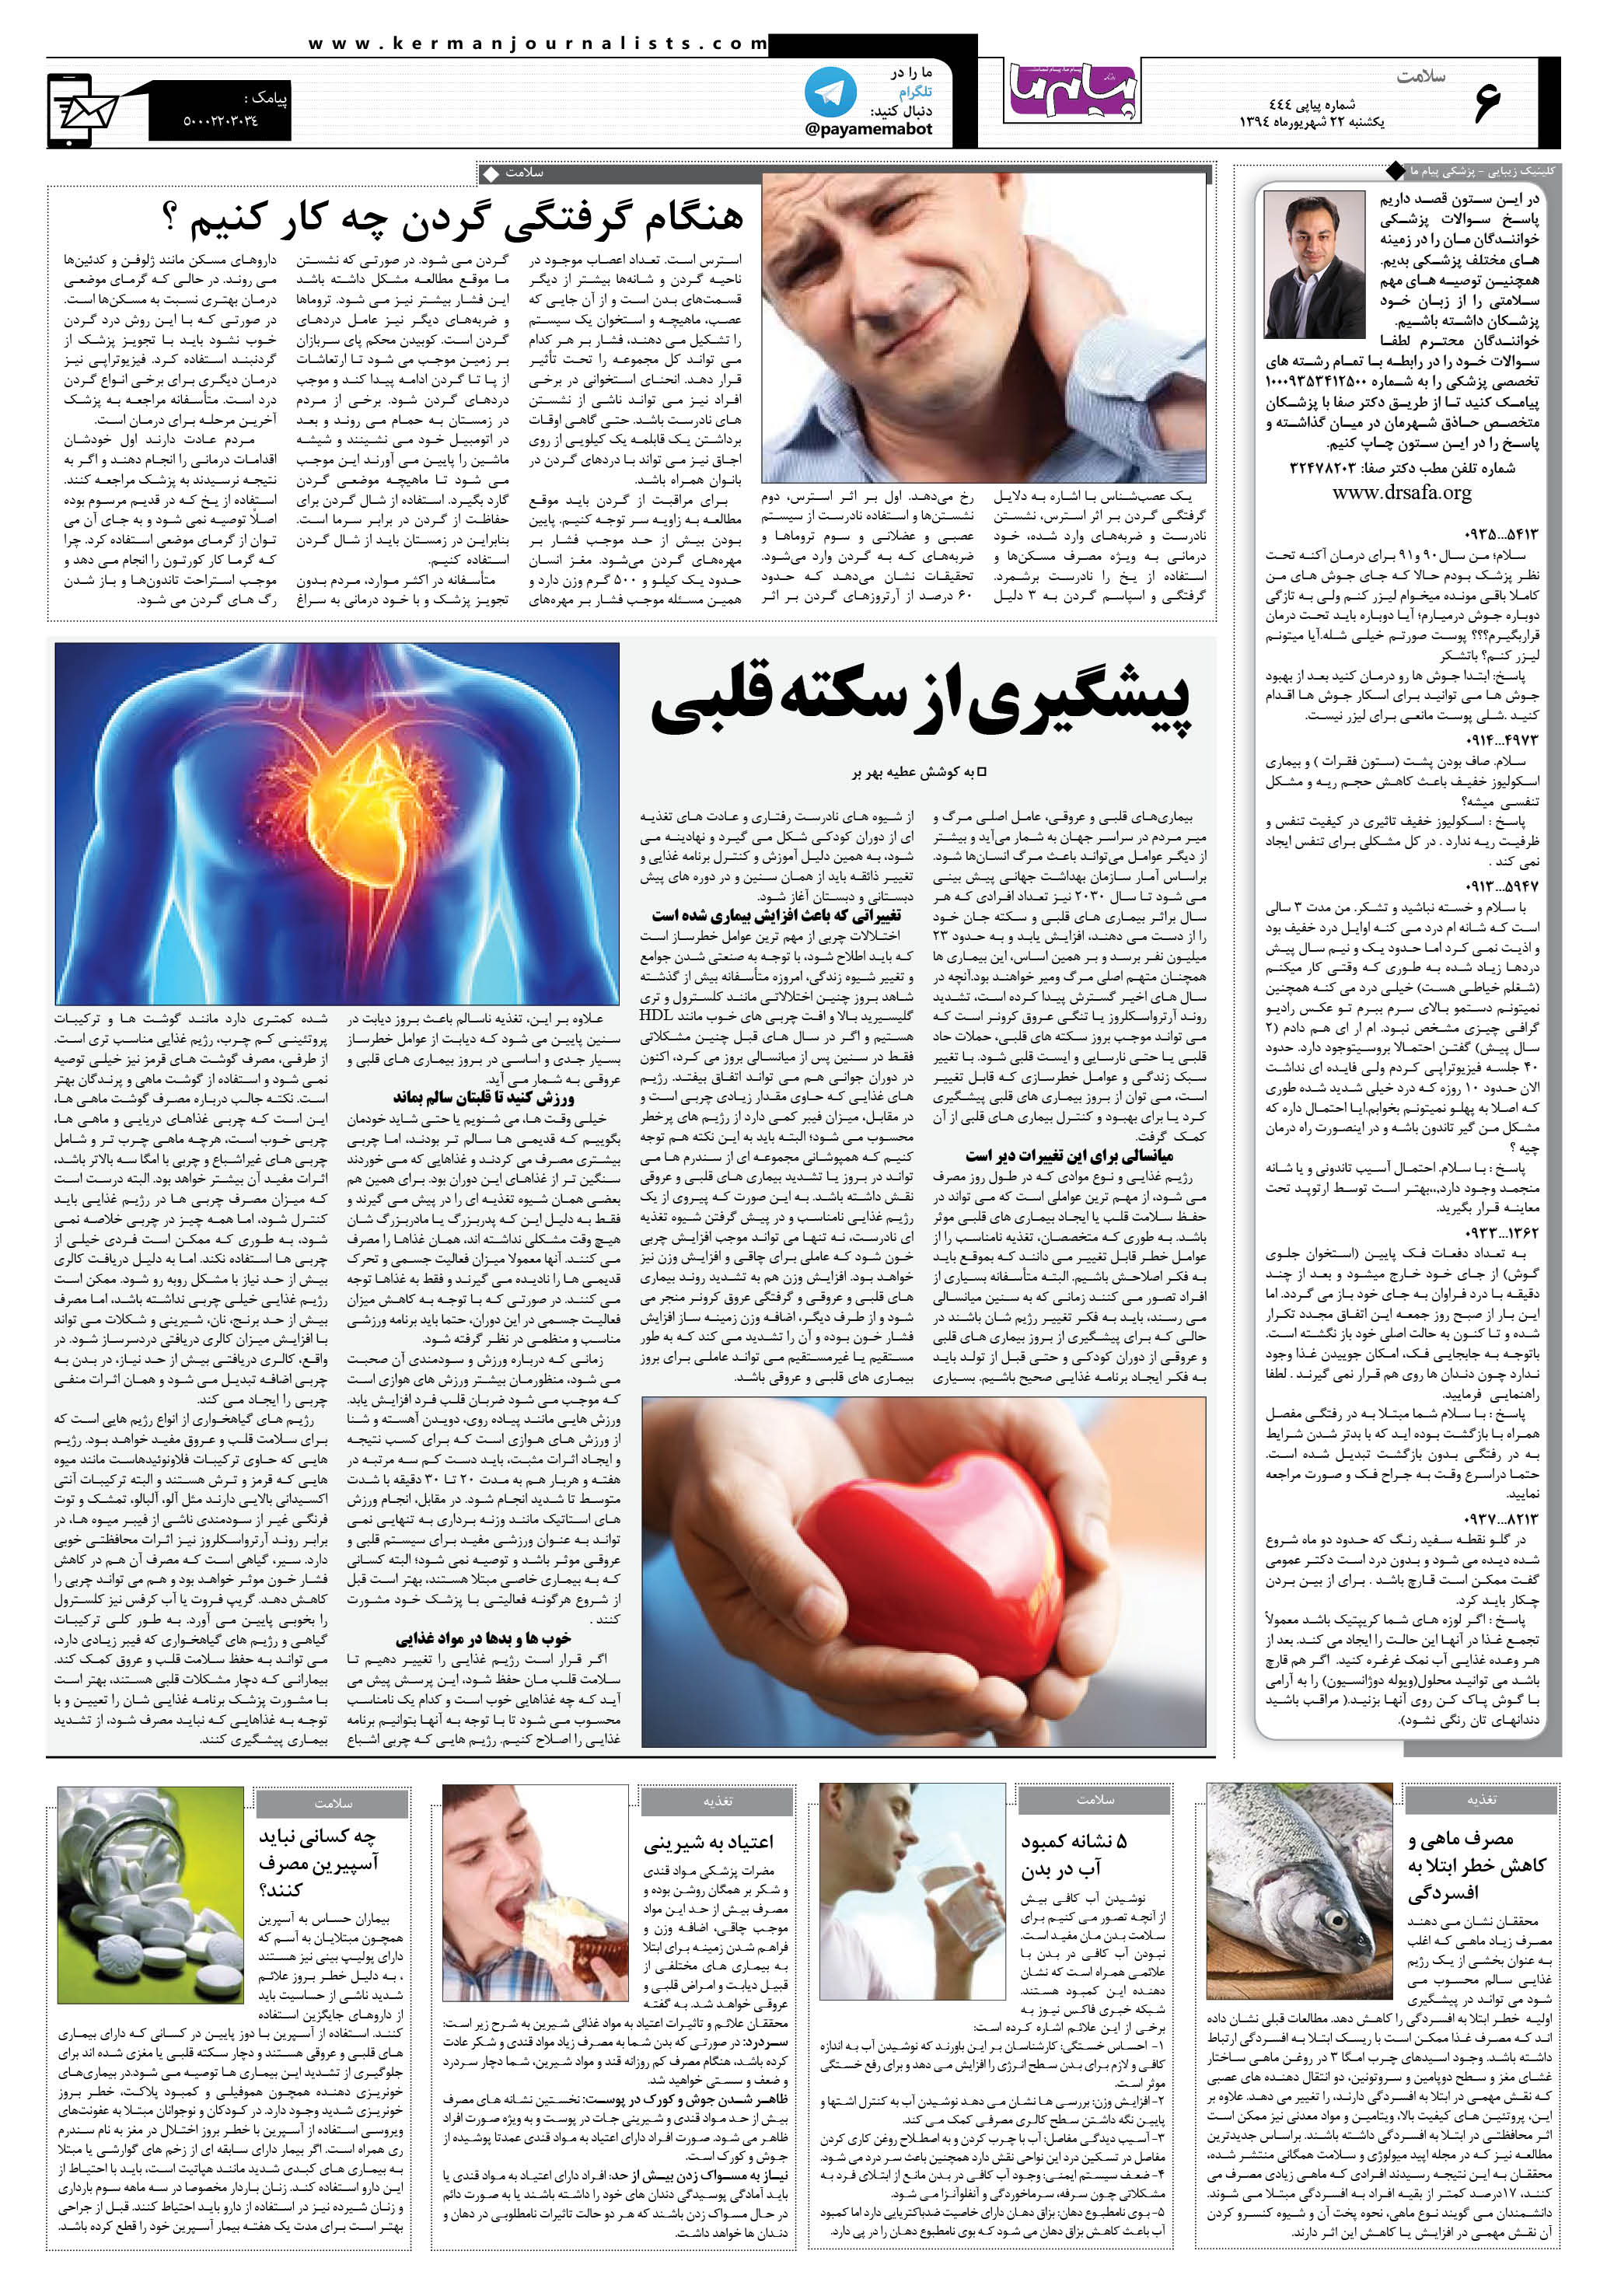 صفحه سلامت شماره 444 روزنامه پیام ما